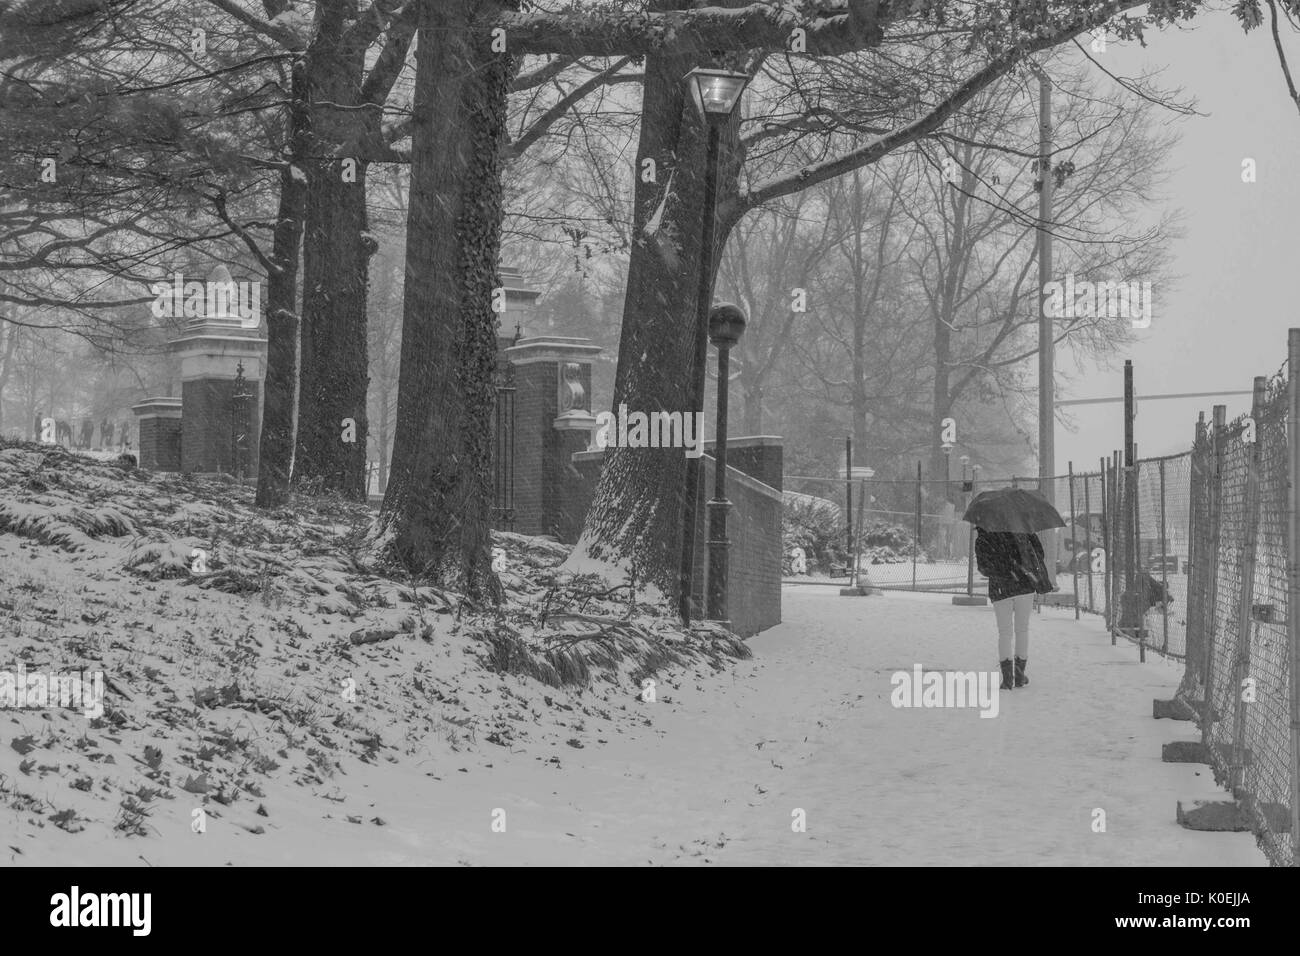 Ein Student, der einen roten Regenschirm trägt, macht einen Spaziergang im Schnee durch die Vordertore der Johns Hopkins Universität, ein Zaun, der während des Baus der Charles Straße rechts von ihr errichtet wurde, schneebedeckte Bäume und Laternenpfade links von ihr, Baltimore, Maryland, 2013. Mit Freundlicher Genehmigung Von Eric Chen. Stockfoto